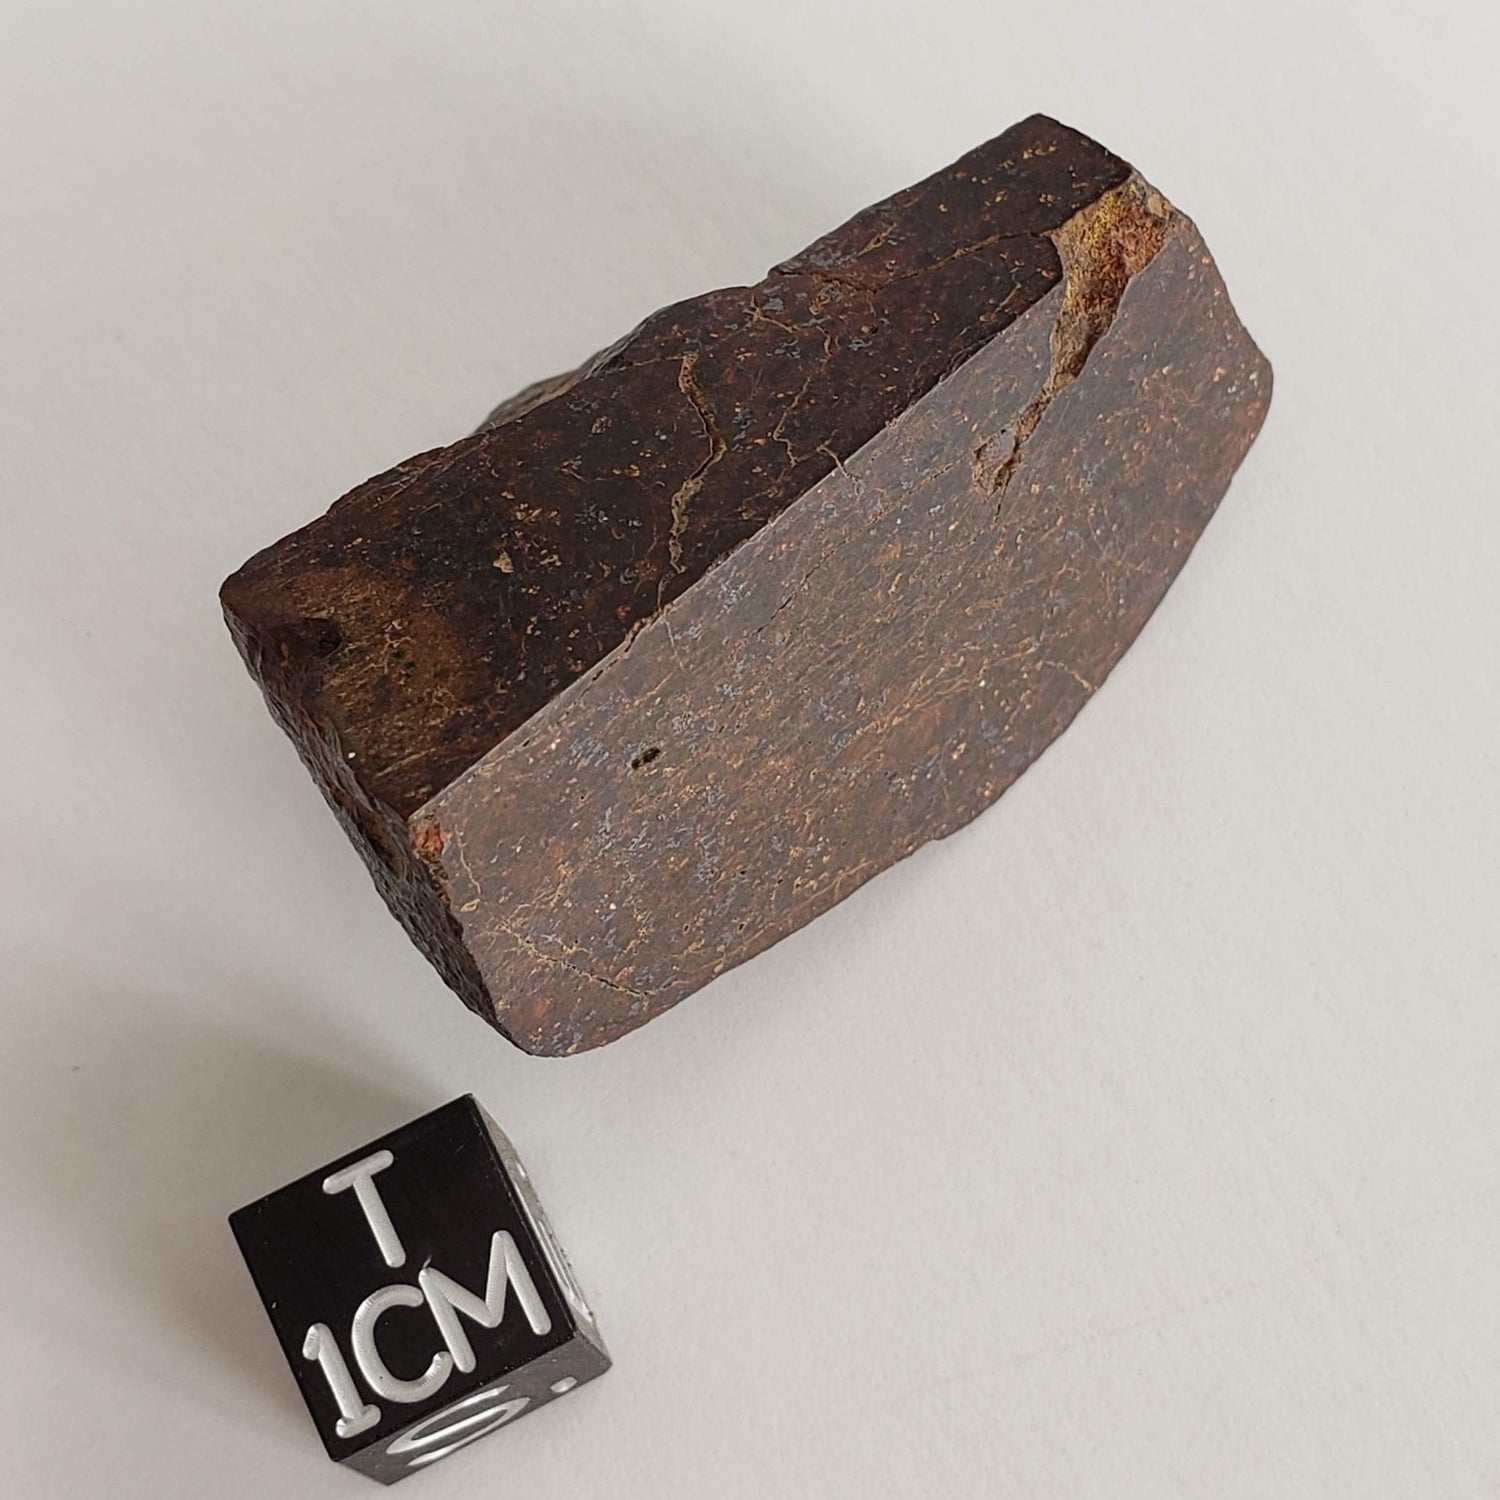 Dhofar 947 Meteorite | 38.40 Gr | Quarter Stone | L5-6 Chondrite | Rare Low TKW | Canagem.com